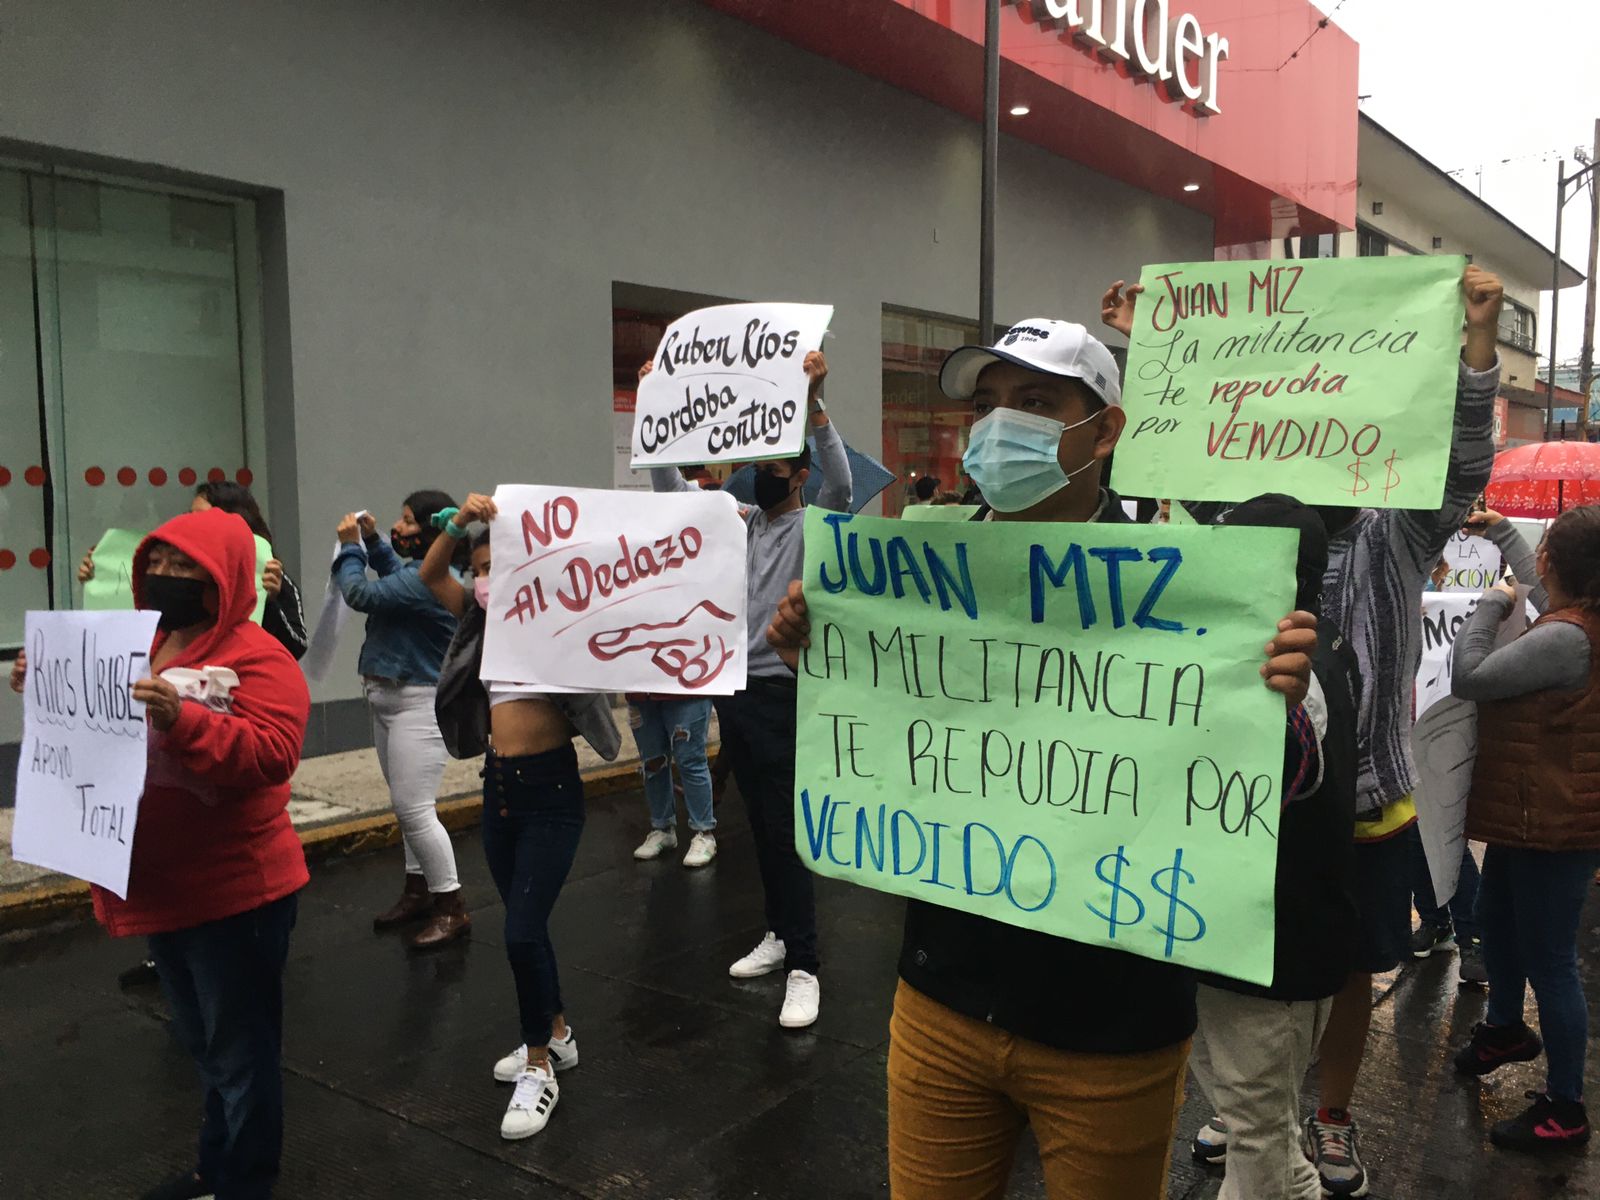 Simpatizantes de Rubén Ríos Uribe protestaron para que se respete candidatura a la alcaldía de Córdoba, que ganó en encuesta